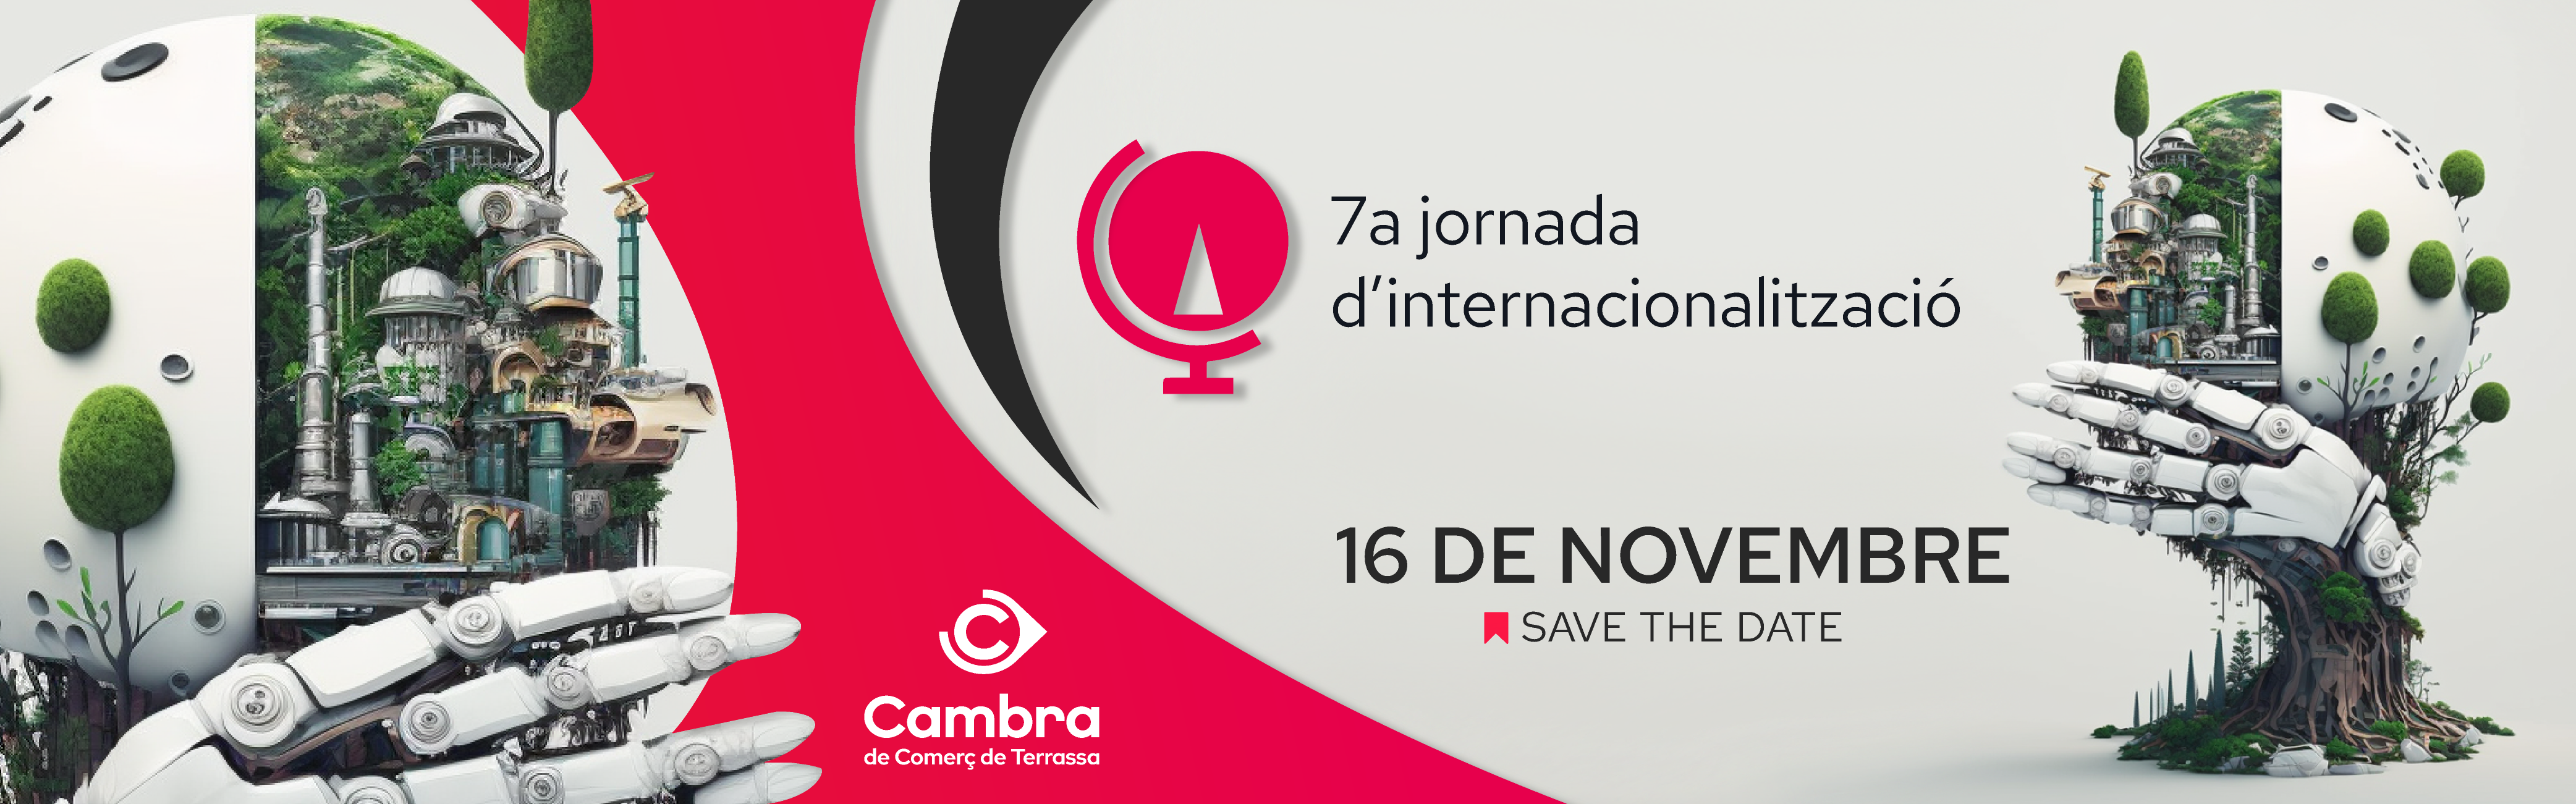 7a Jornada Internacionalització_Save the date_CA